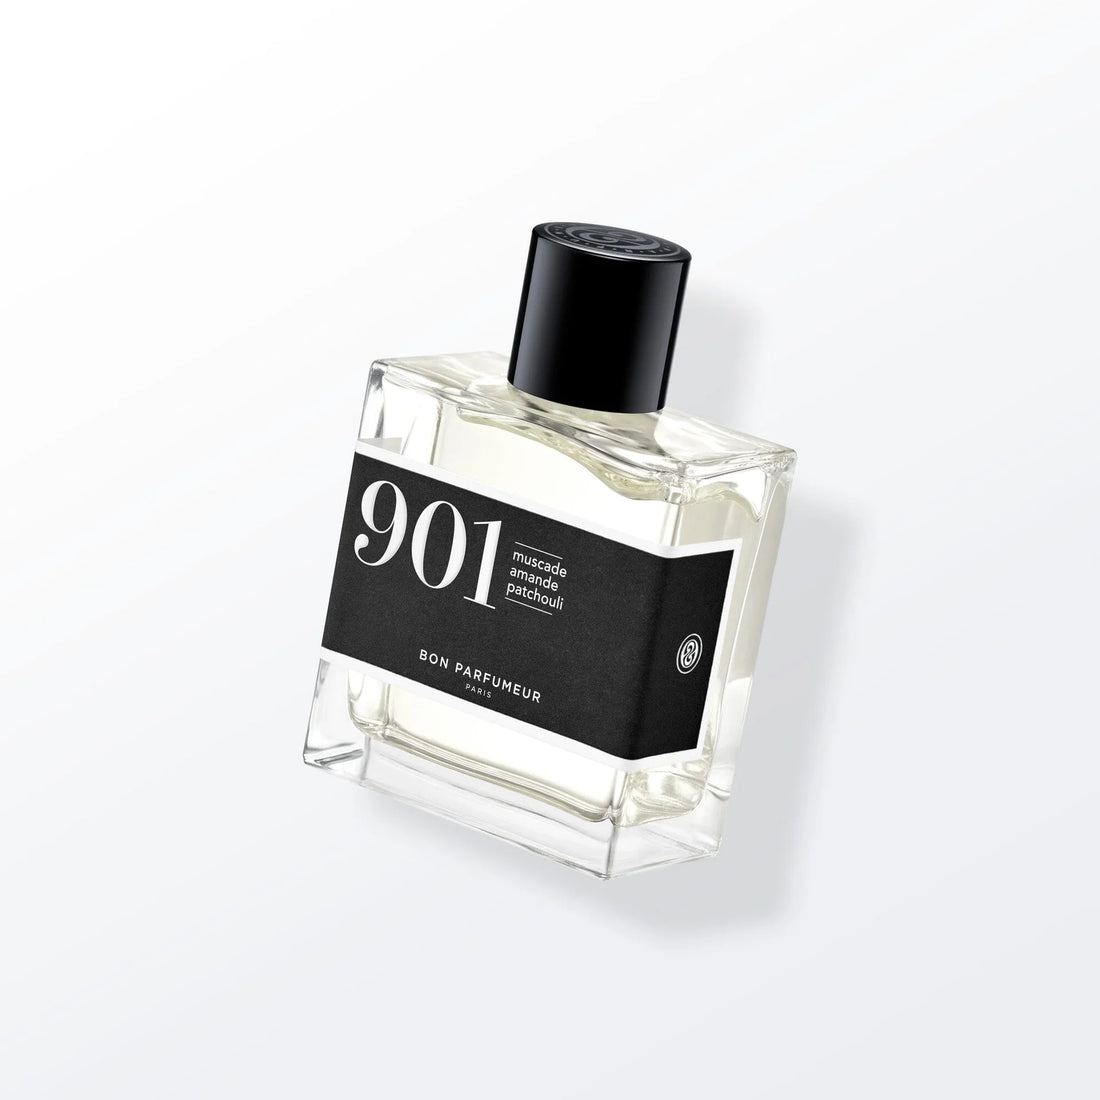 BON PARFUMEUR - Eau de Parfum &quot;901&quot; 30ml